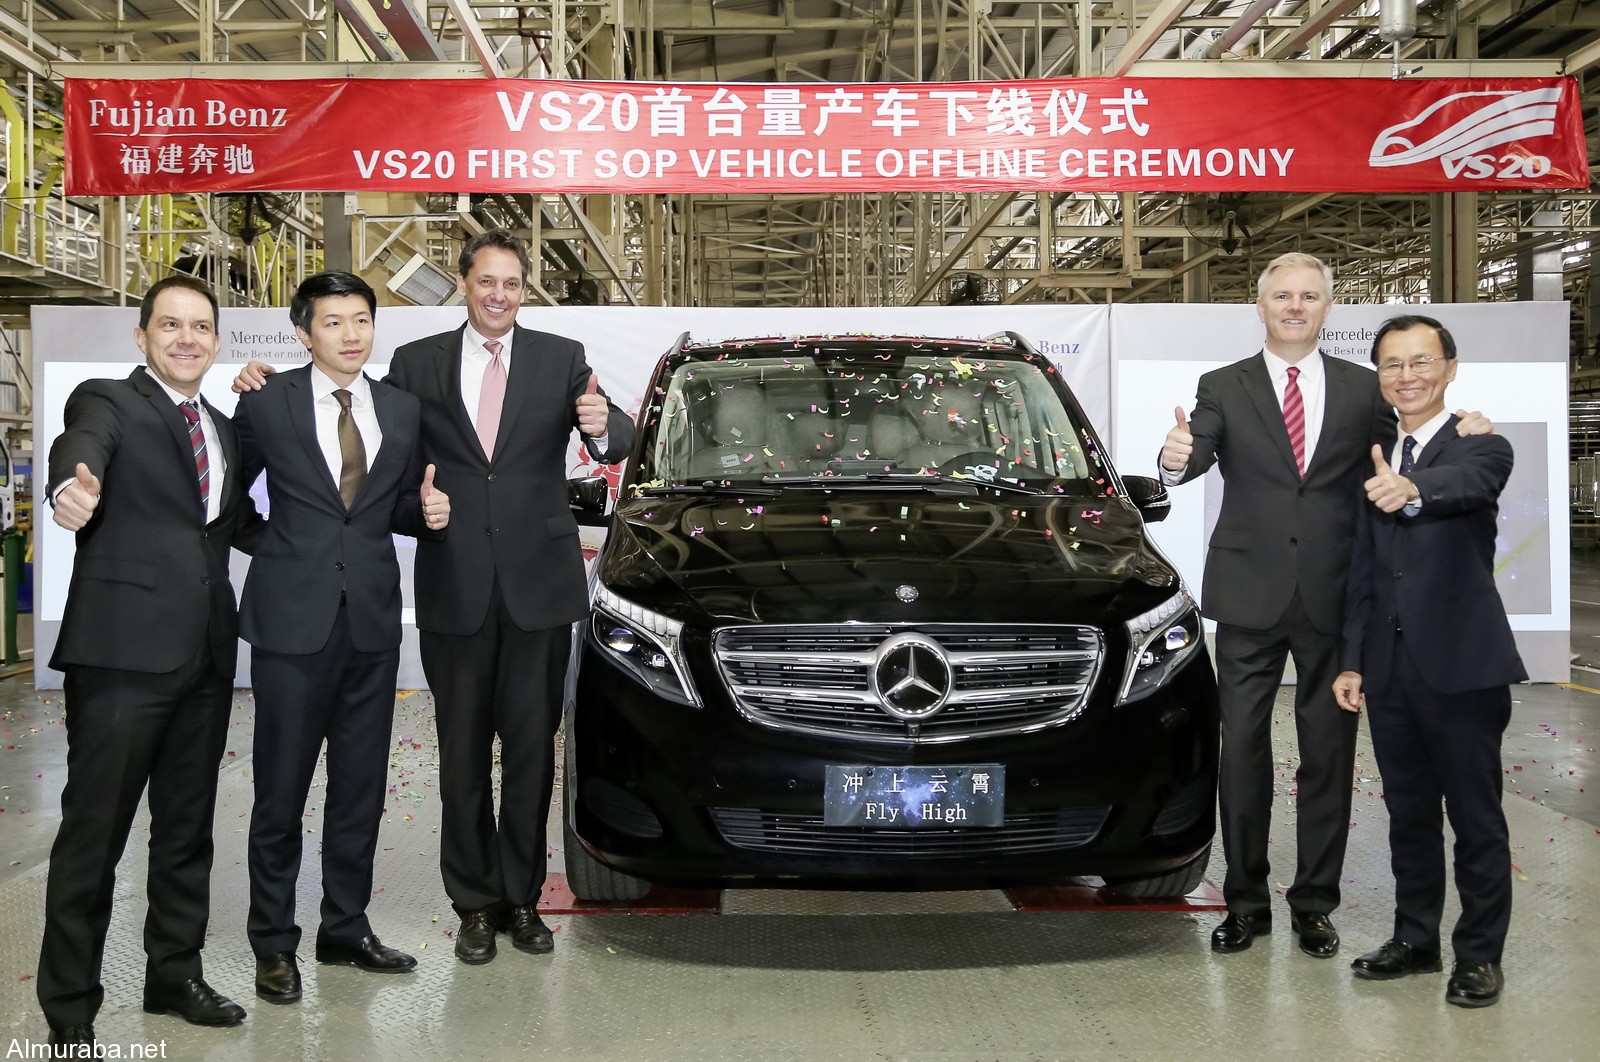 "مرسيدس بنز" تكشف النقاب عن مركبة V-Class الجديدة المصنعة بالصين Mercedes-Benz 2017 1